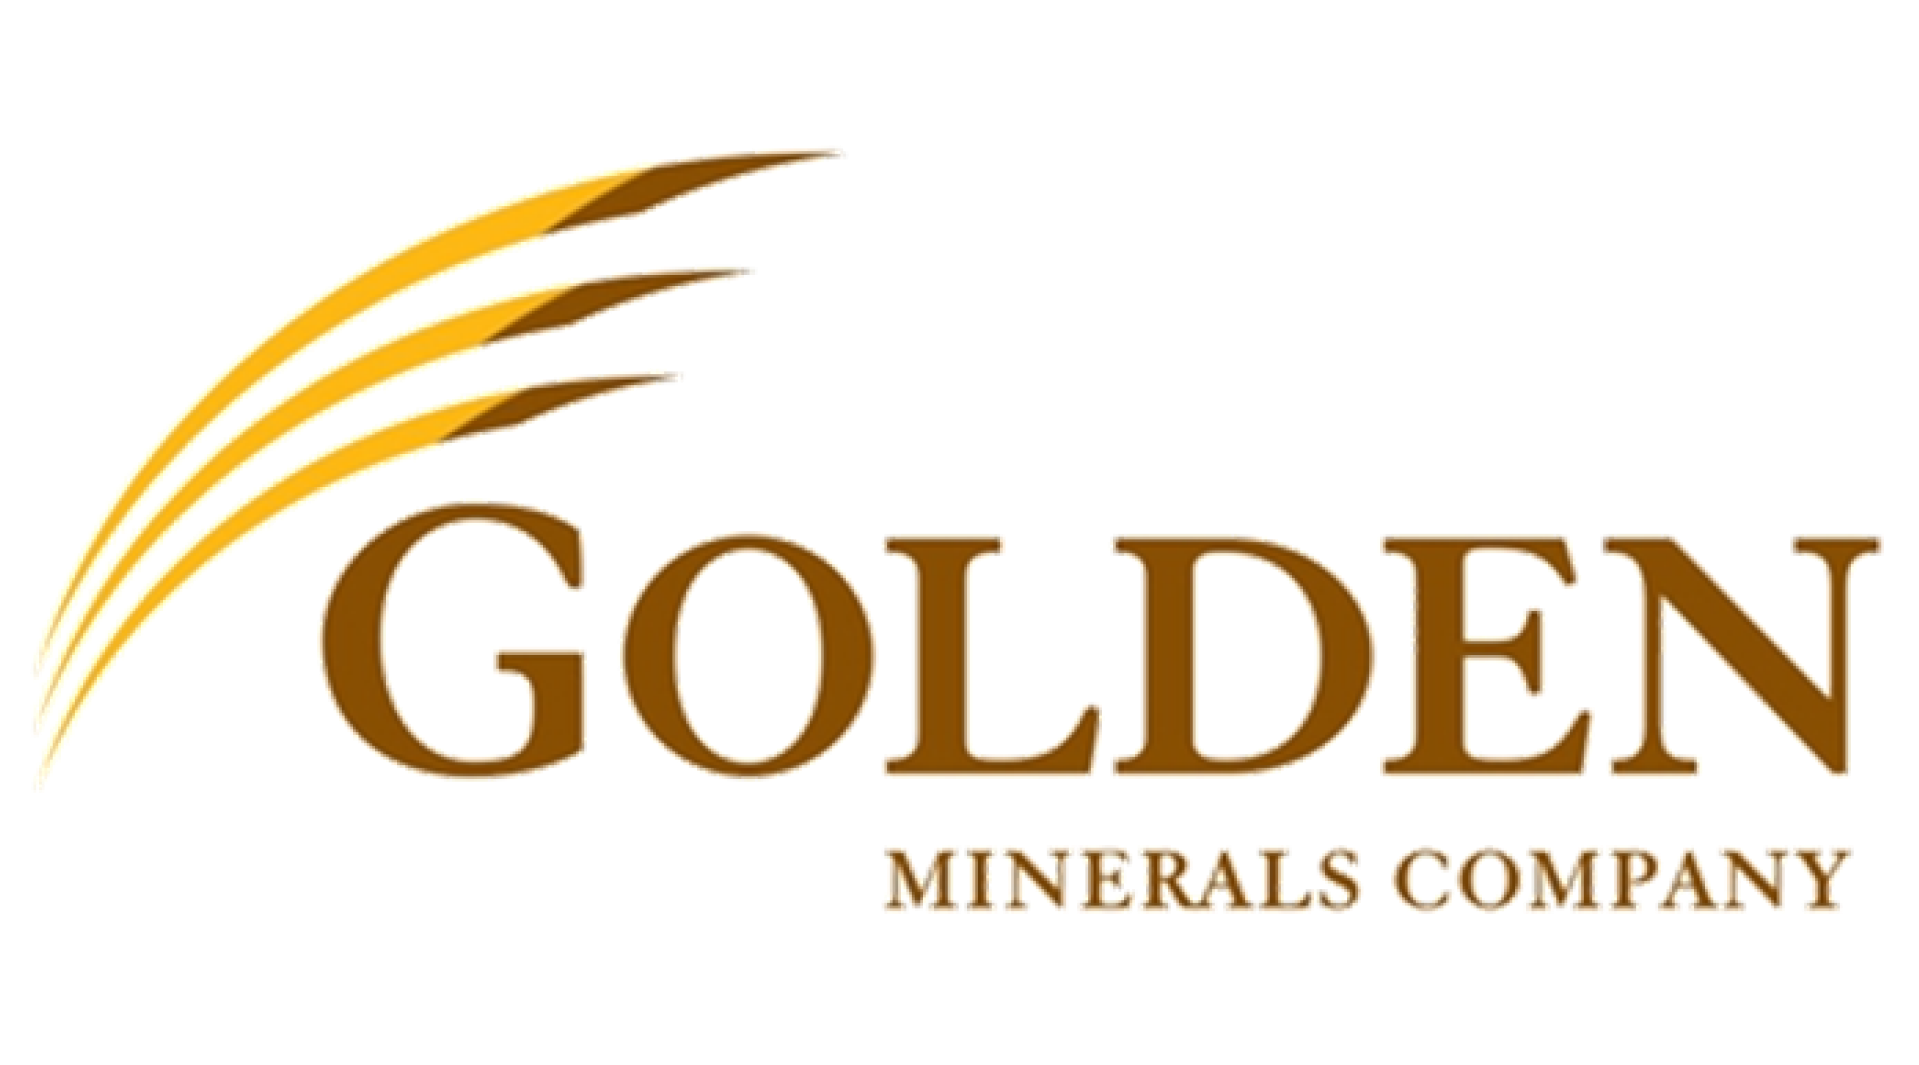 Golden Minerals Company